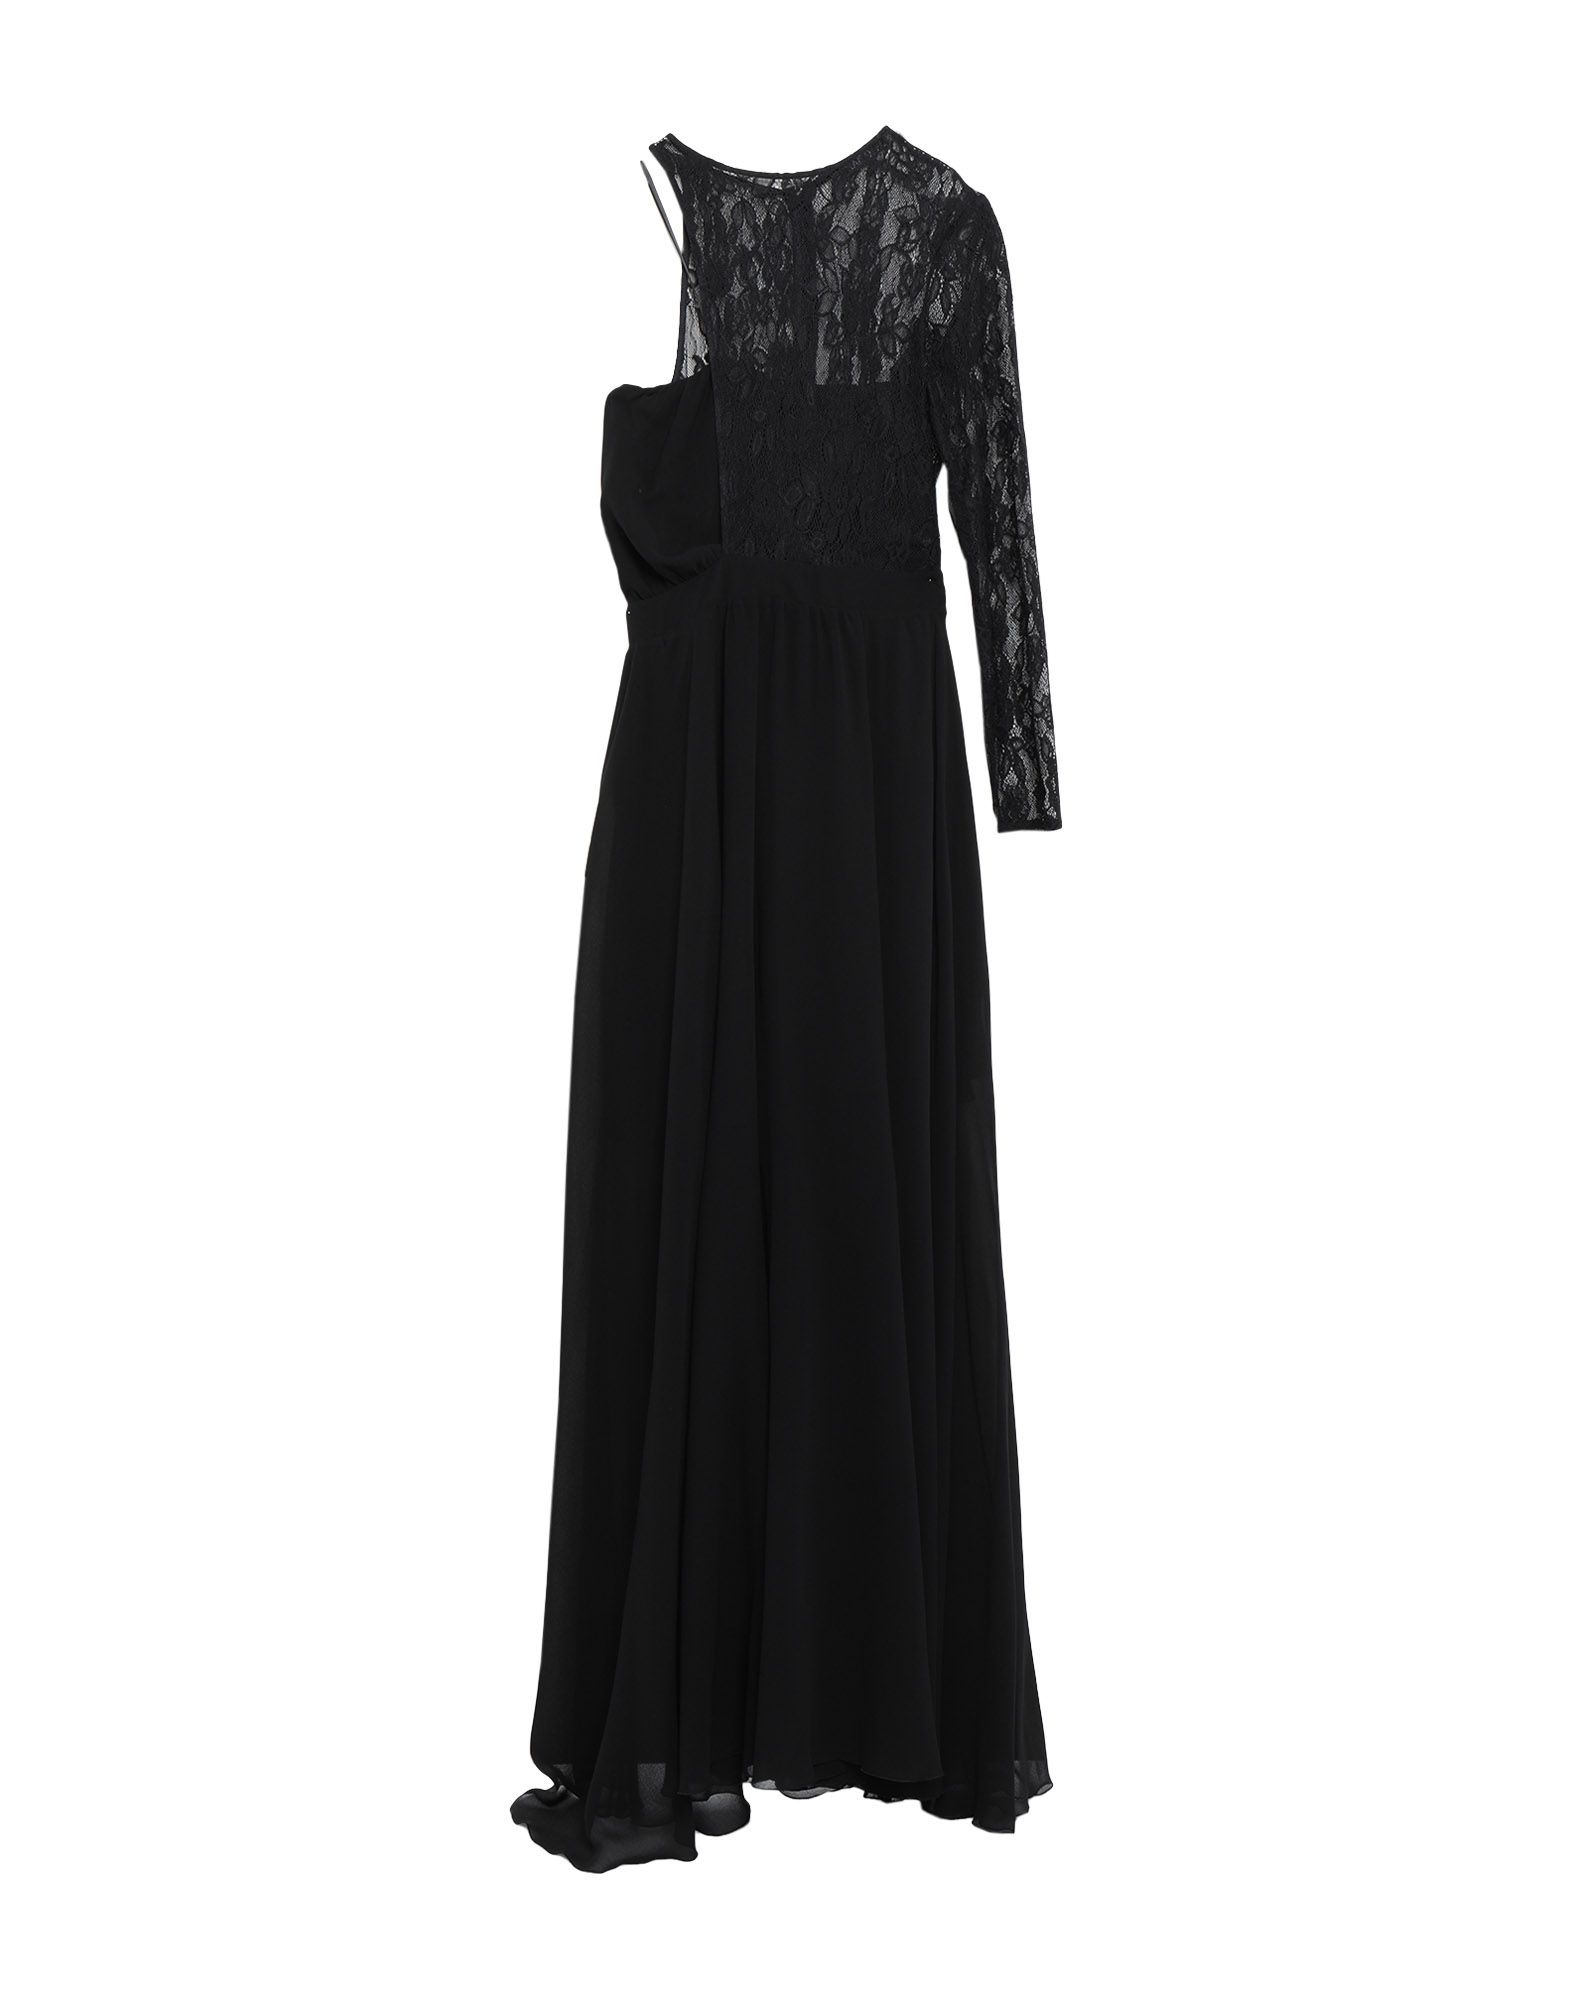 Длинное платье  - Черный цвет